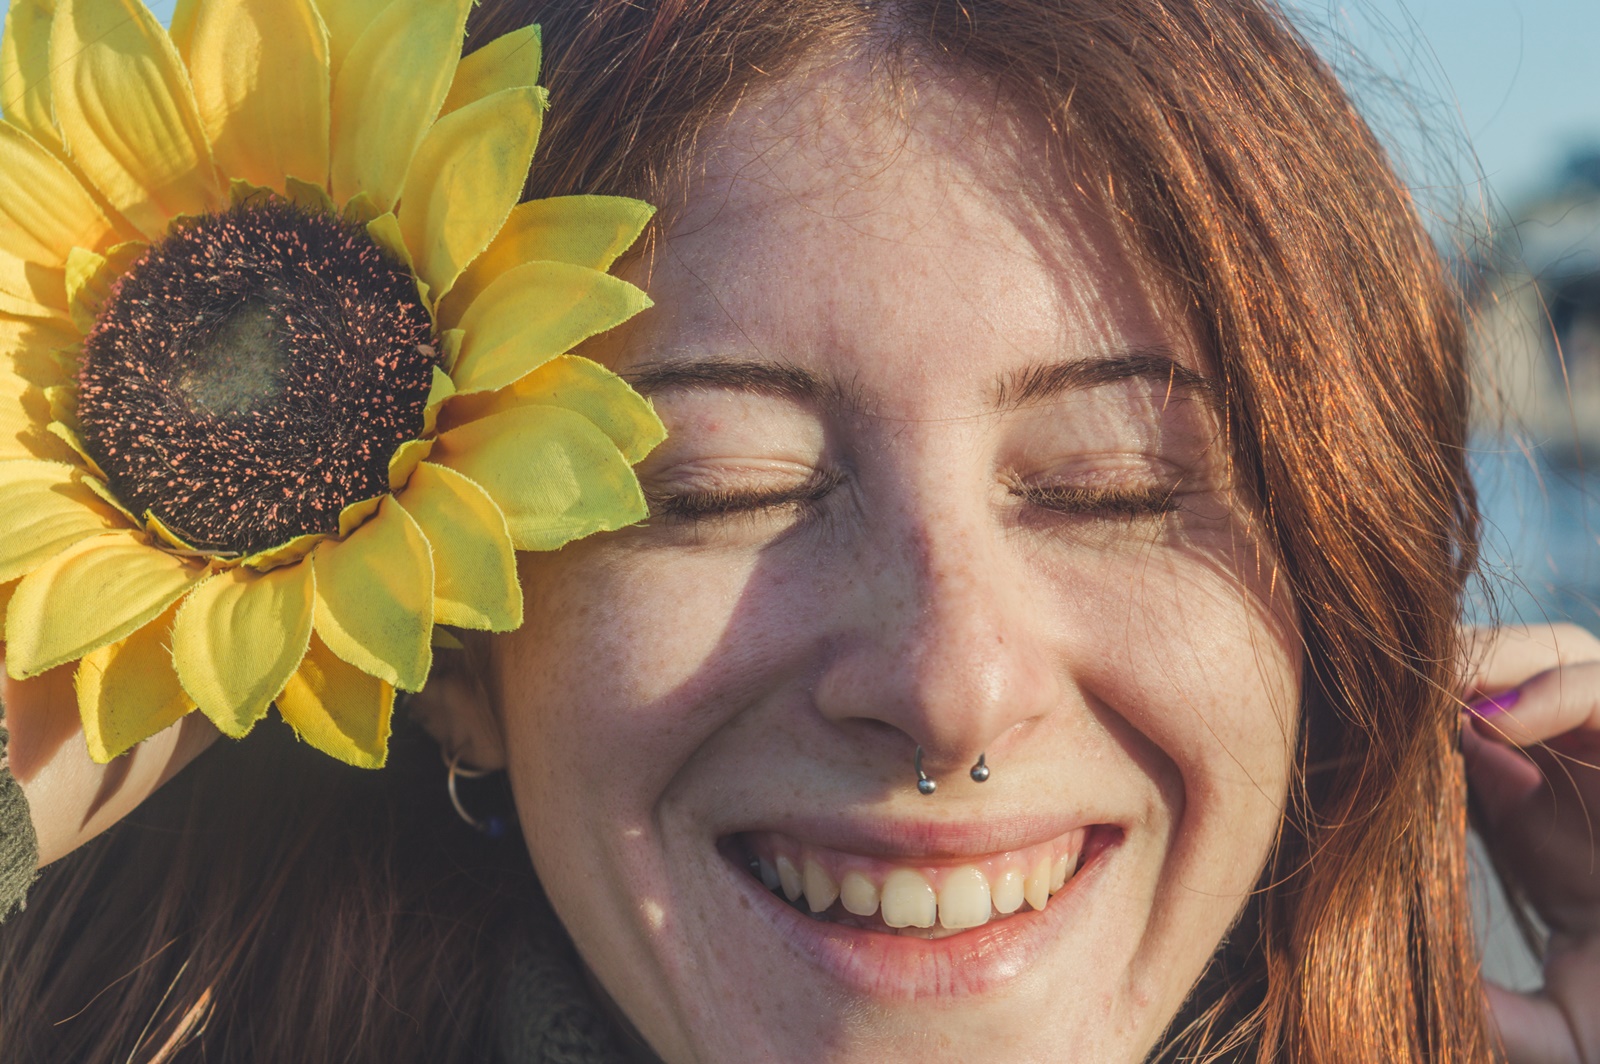 Πώς να γίνω ευτυχισμένος: 10 απλές συνήθειες που θα σε φέρουν πιο κοντά